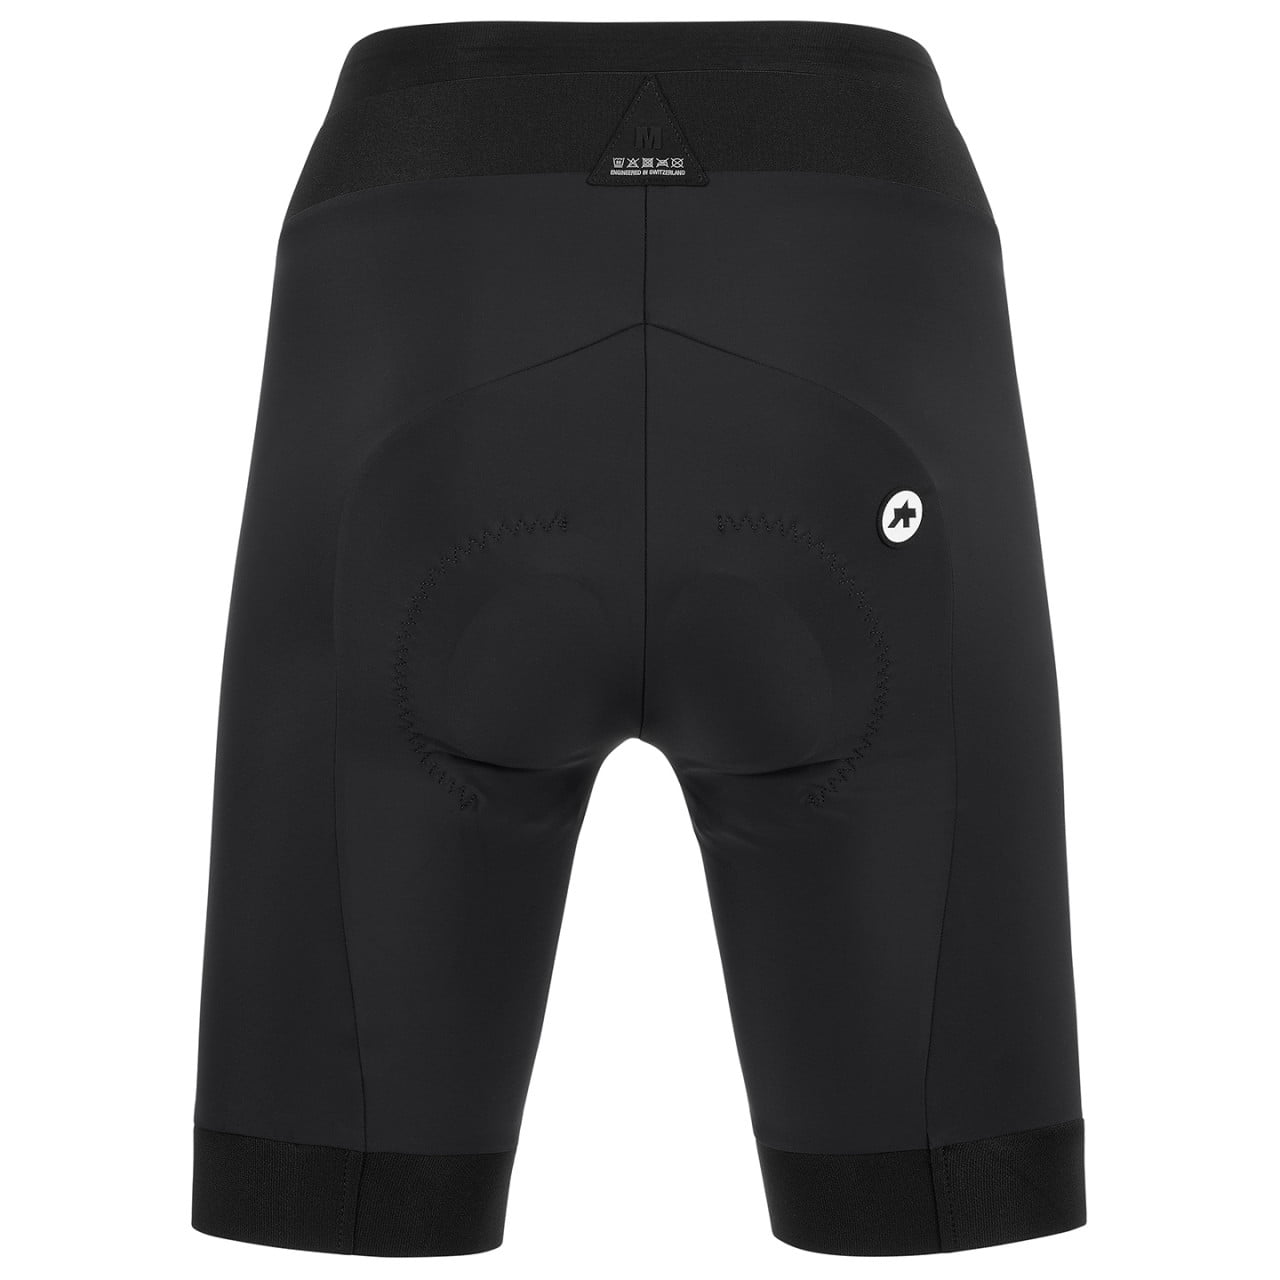 UMA GT C2 - short Women's Cycling Trousers